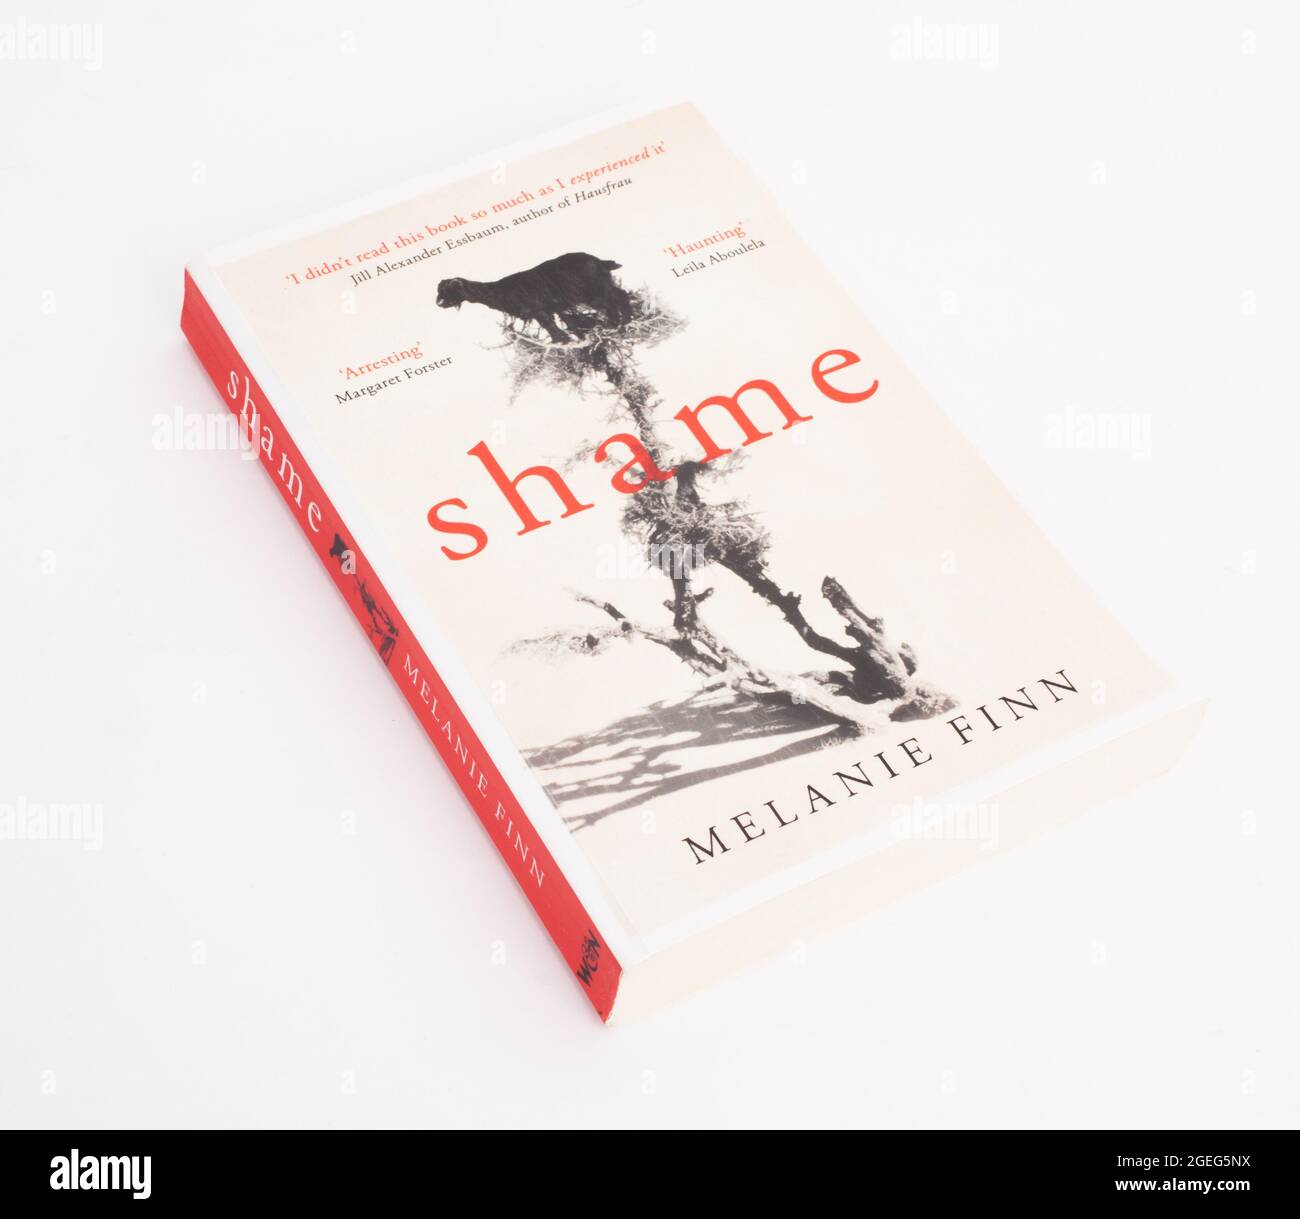 The book, Shame by Melanie Finn Stock Photo